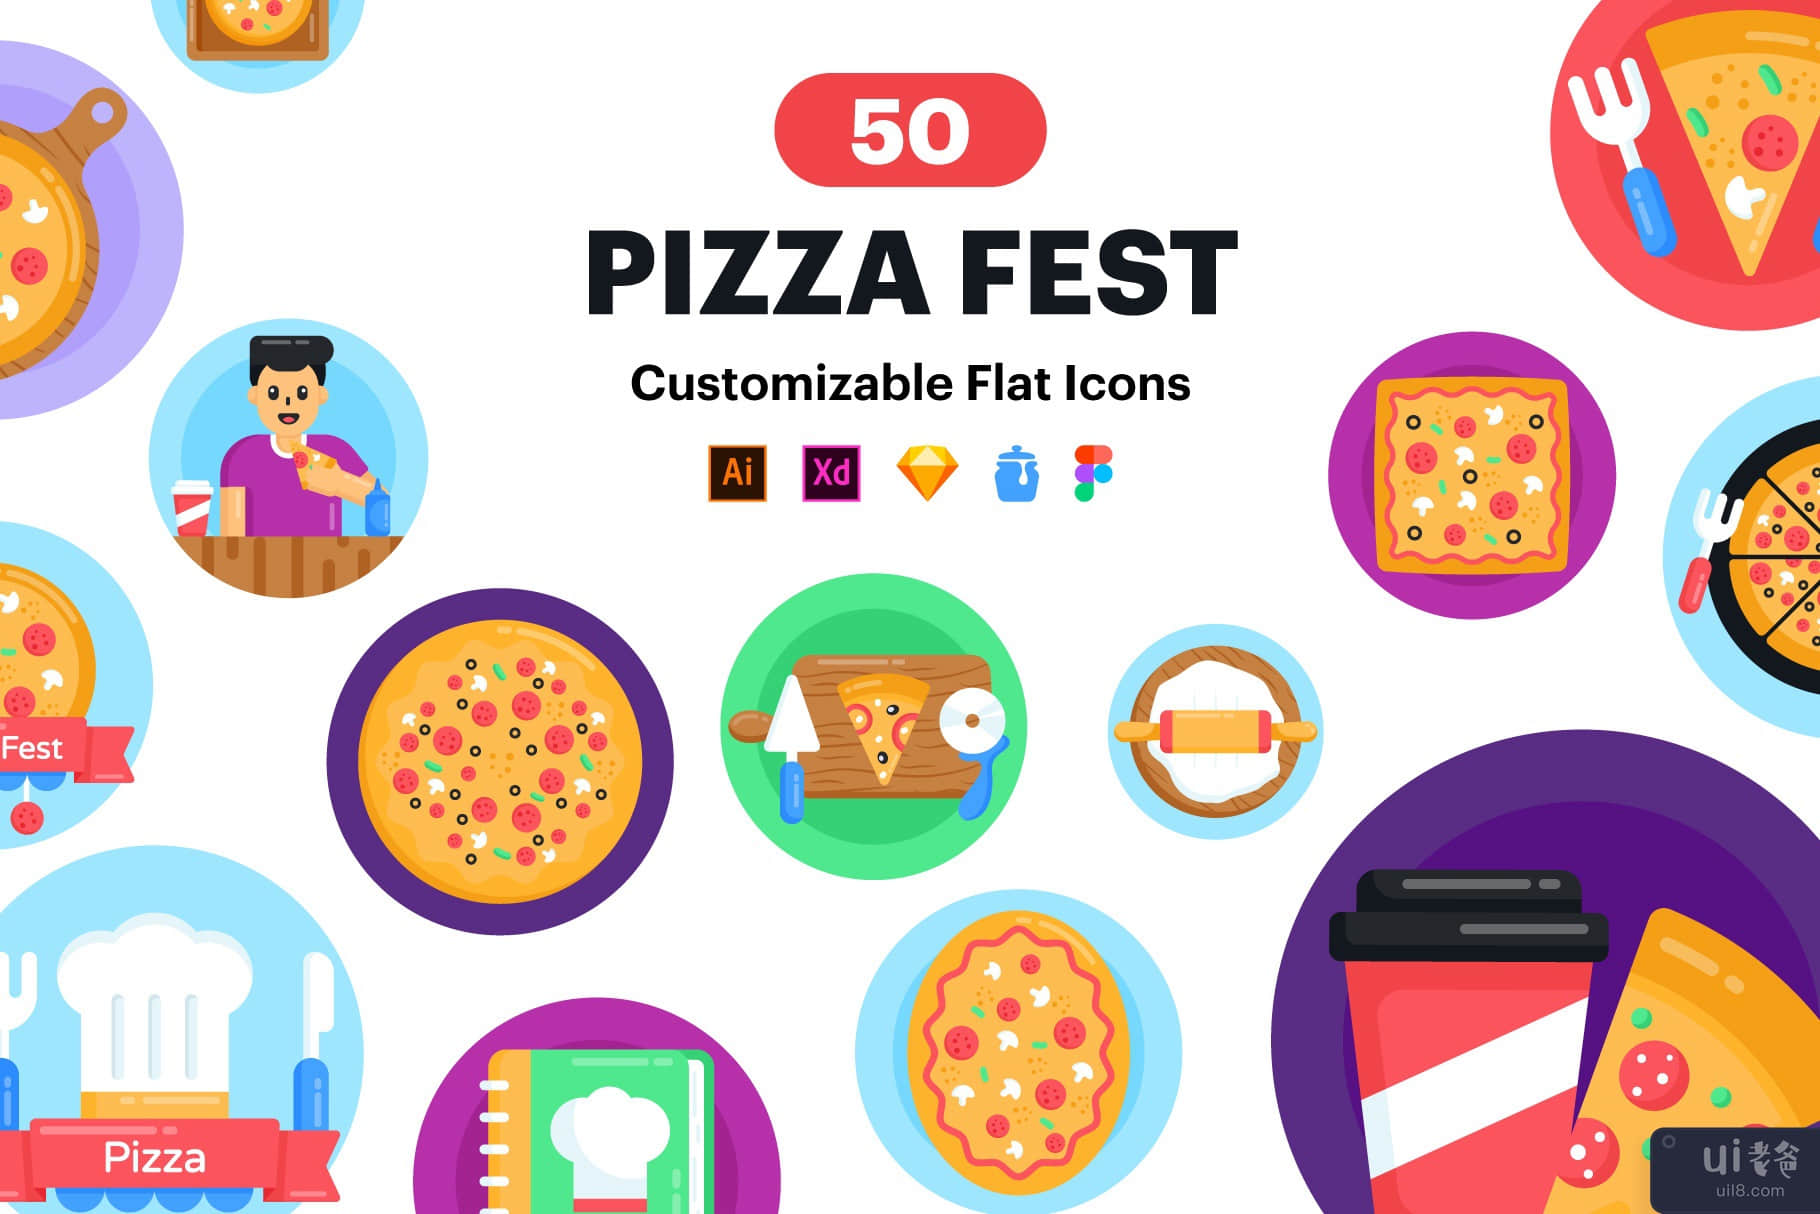 比萨图标-50 比萨巨星矢量(Pizza Icons - 50 Pizza Fests Vector)插图1